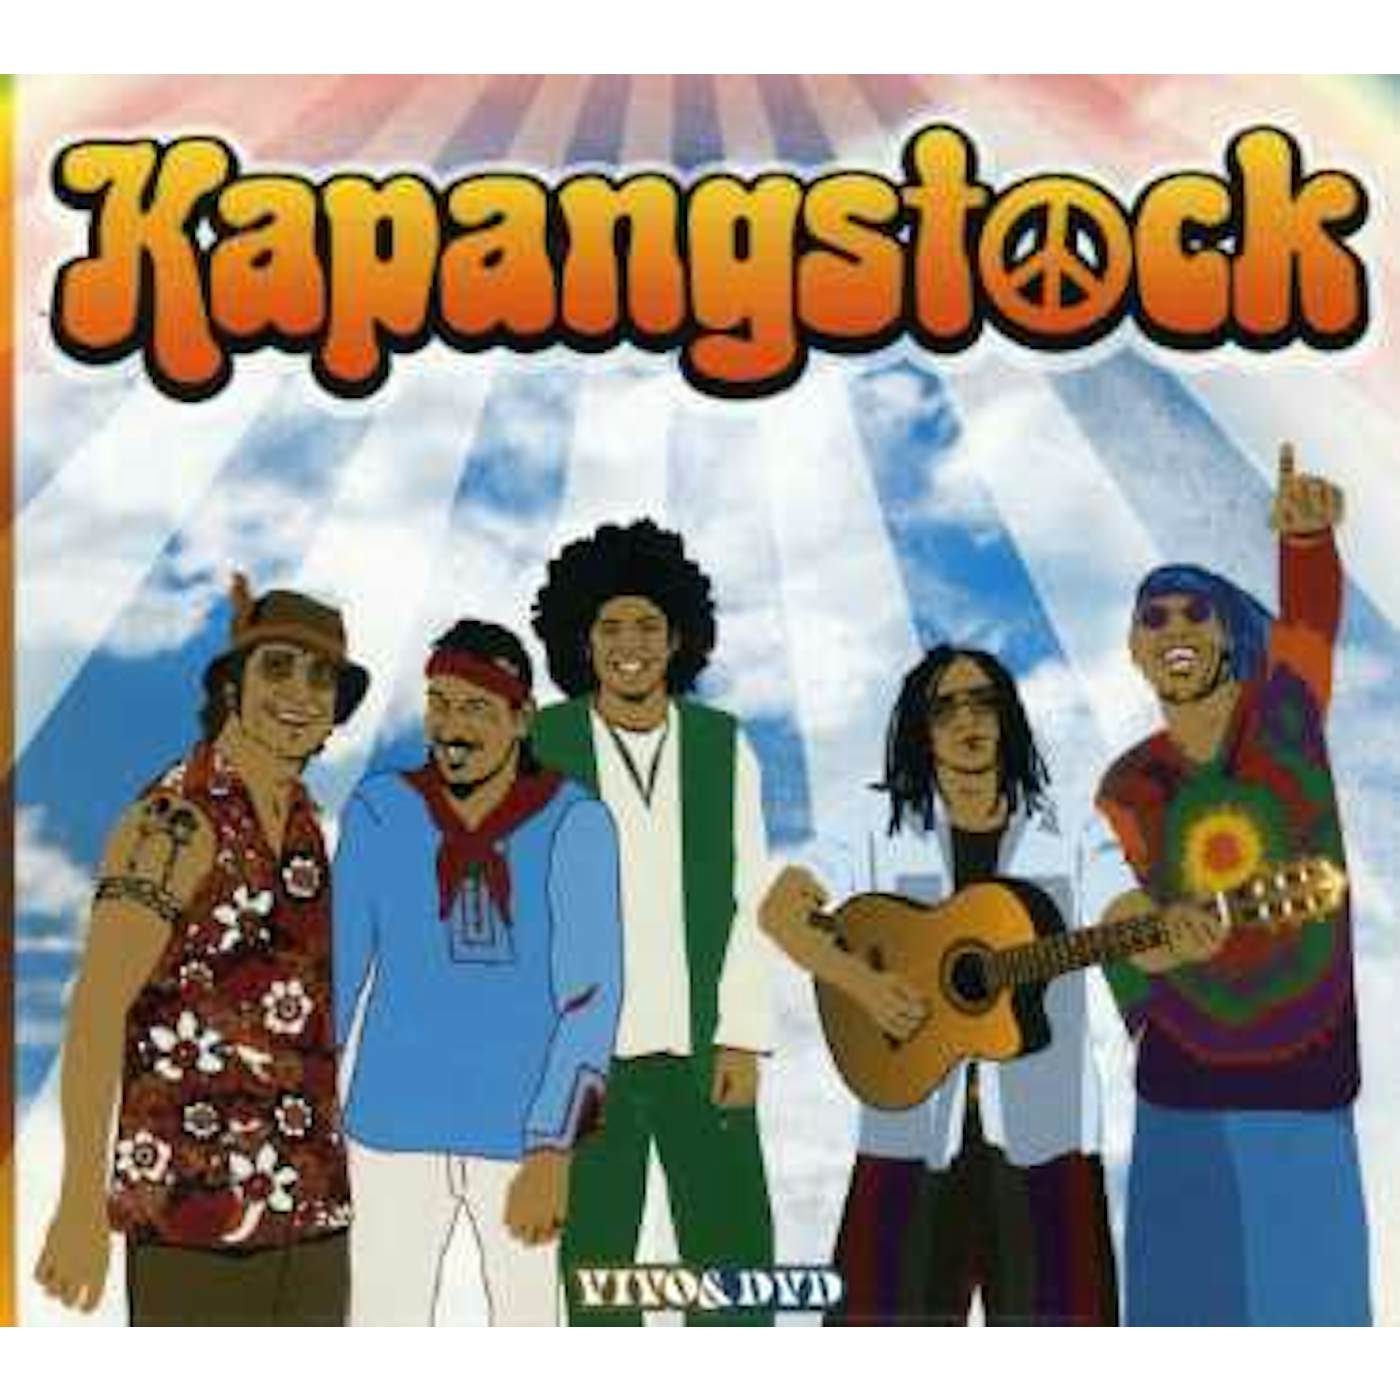 Kapanga KAPANGSTOCK DVD